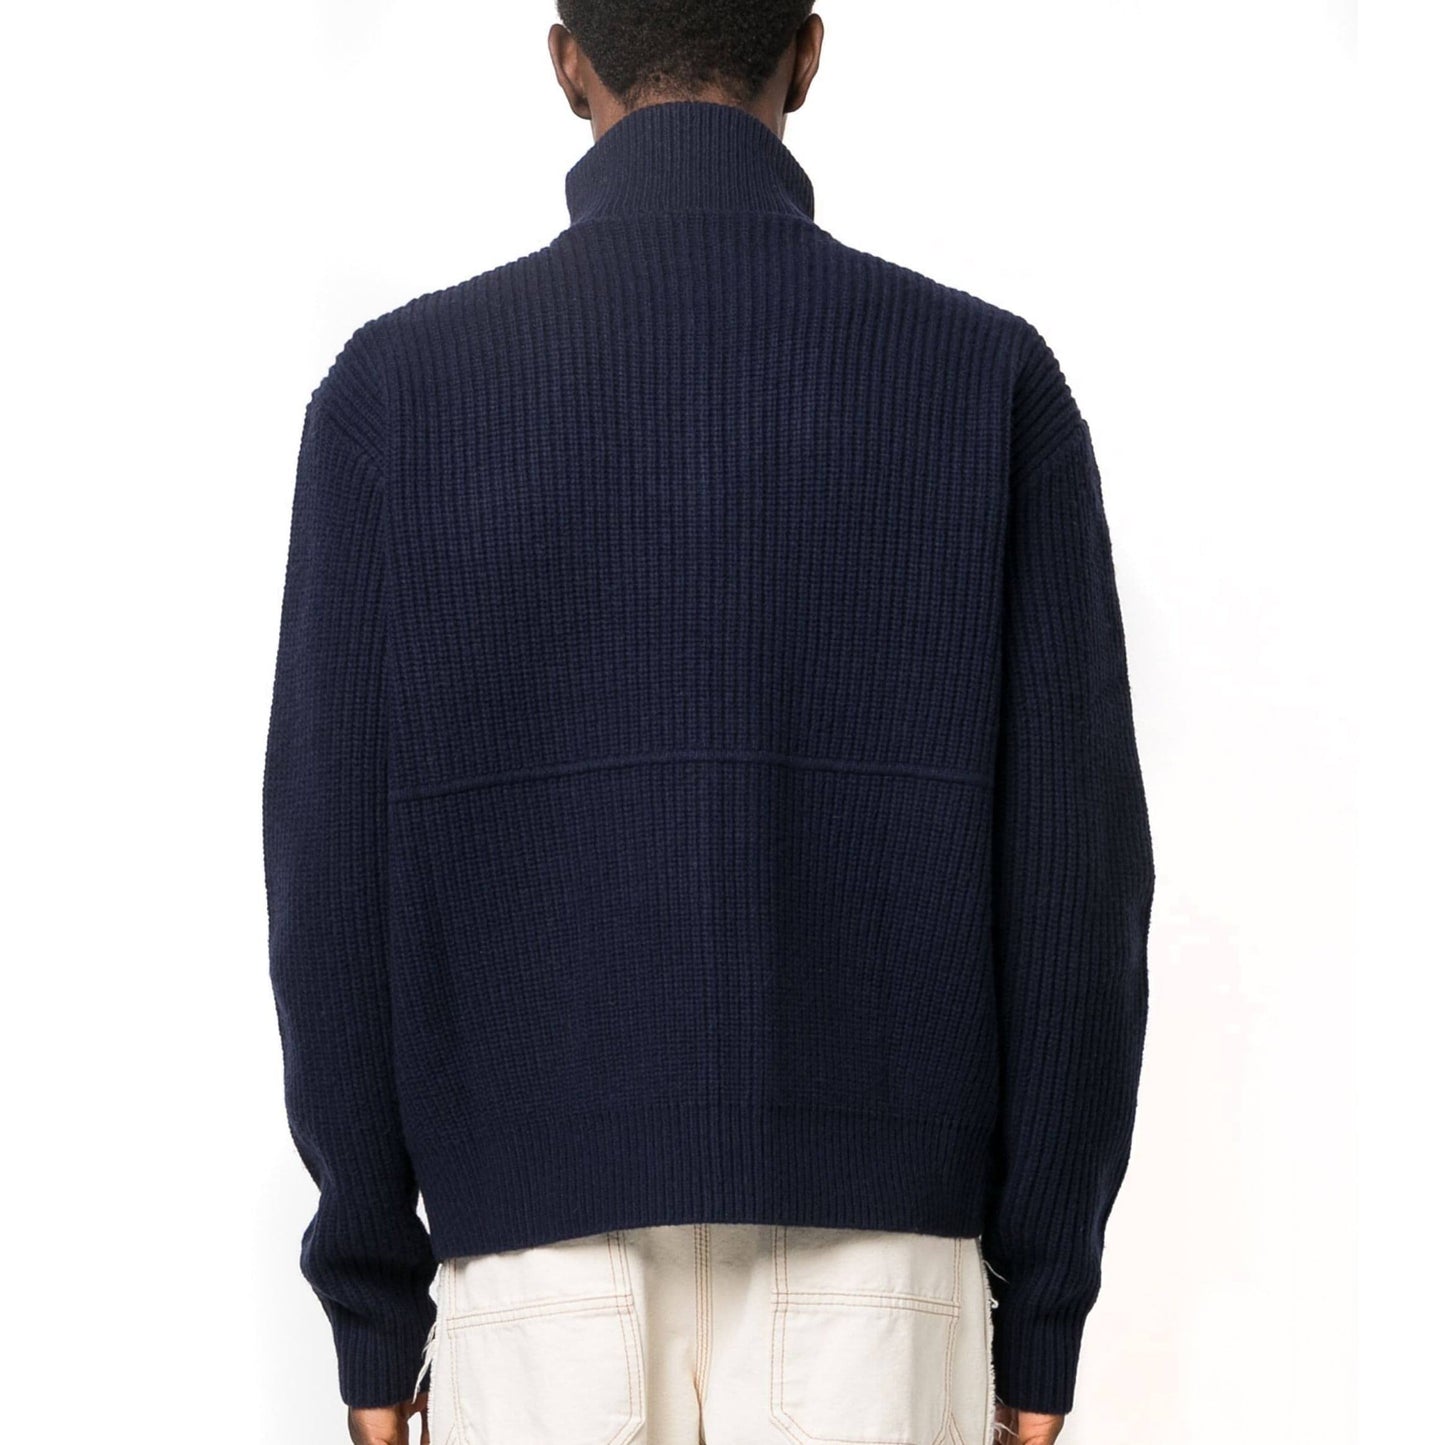 AXEL ARIGATO vyriškas mėlynas megztinis su užtrauktuku Taro zip sweater